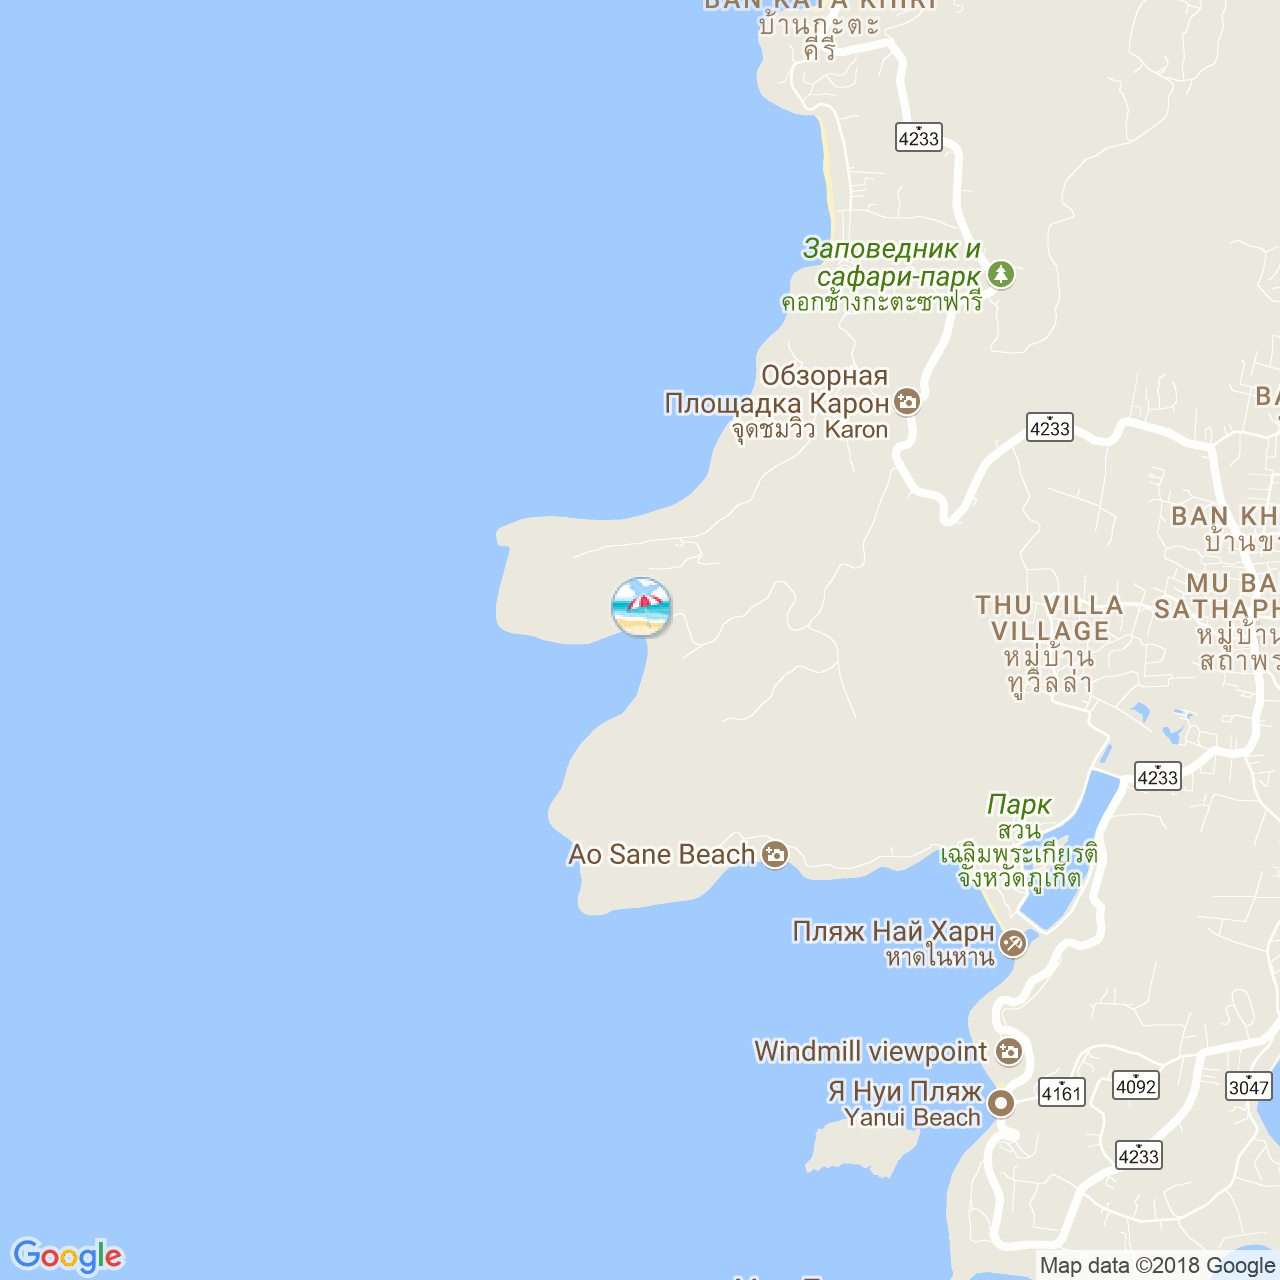 Пляж Нуи на карте Пхукета